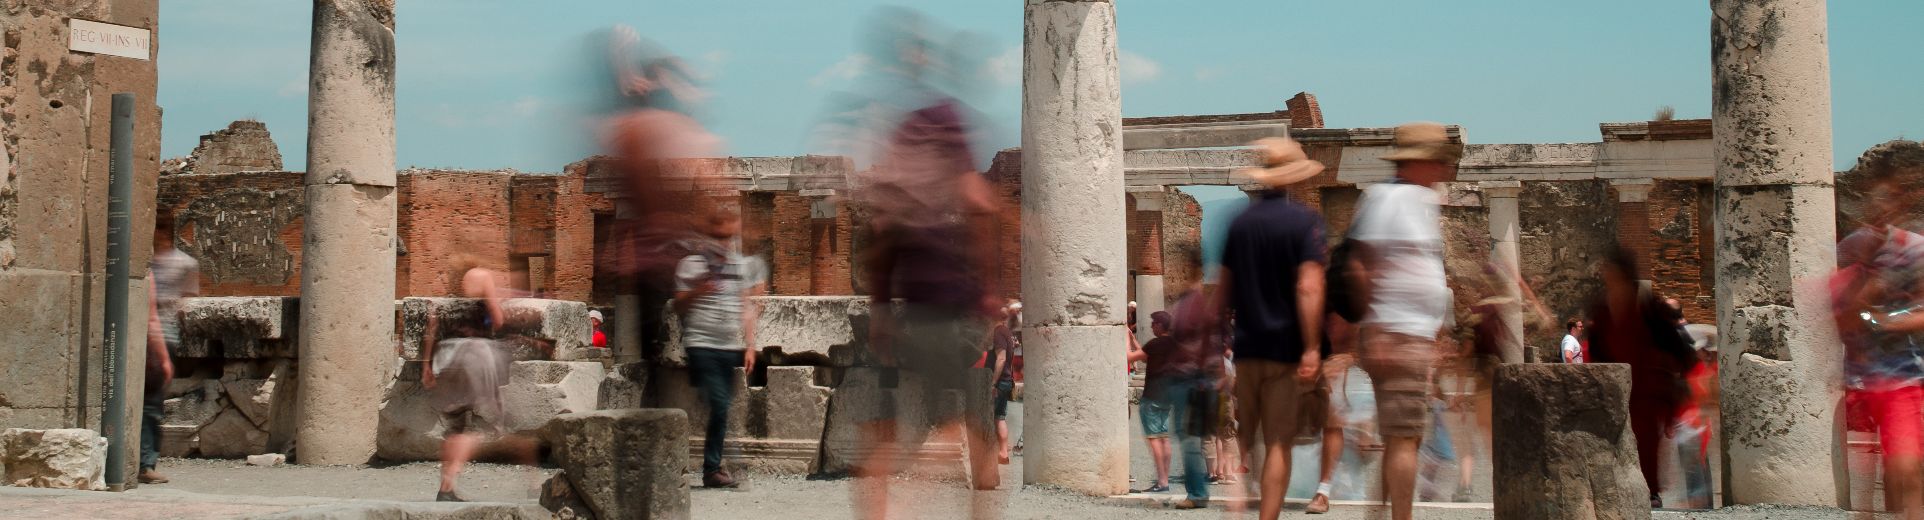 Pompei e Vesuvio: storia, natura e panorama mozzafiato